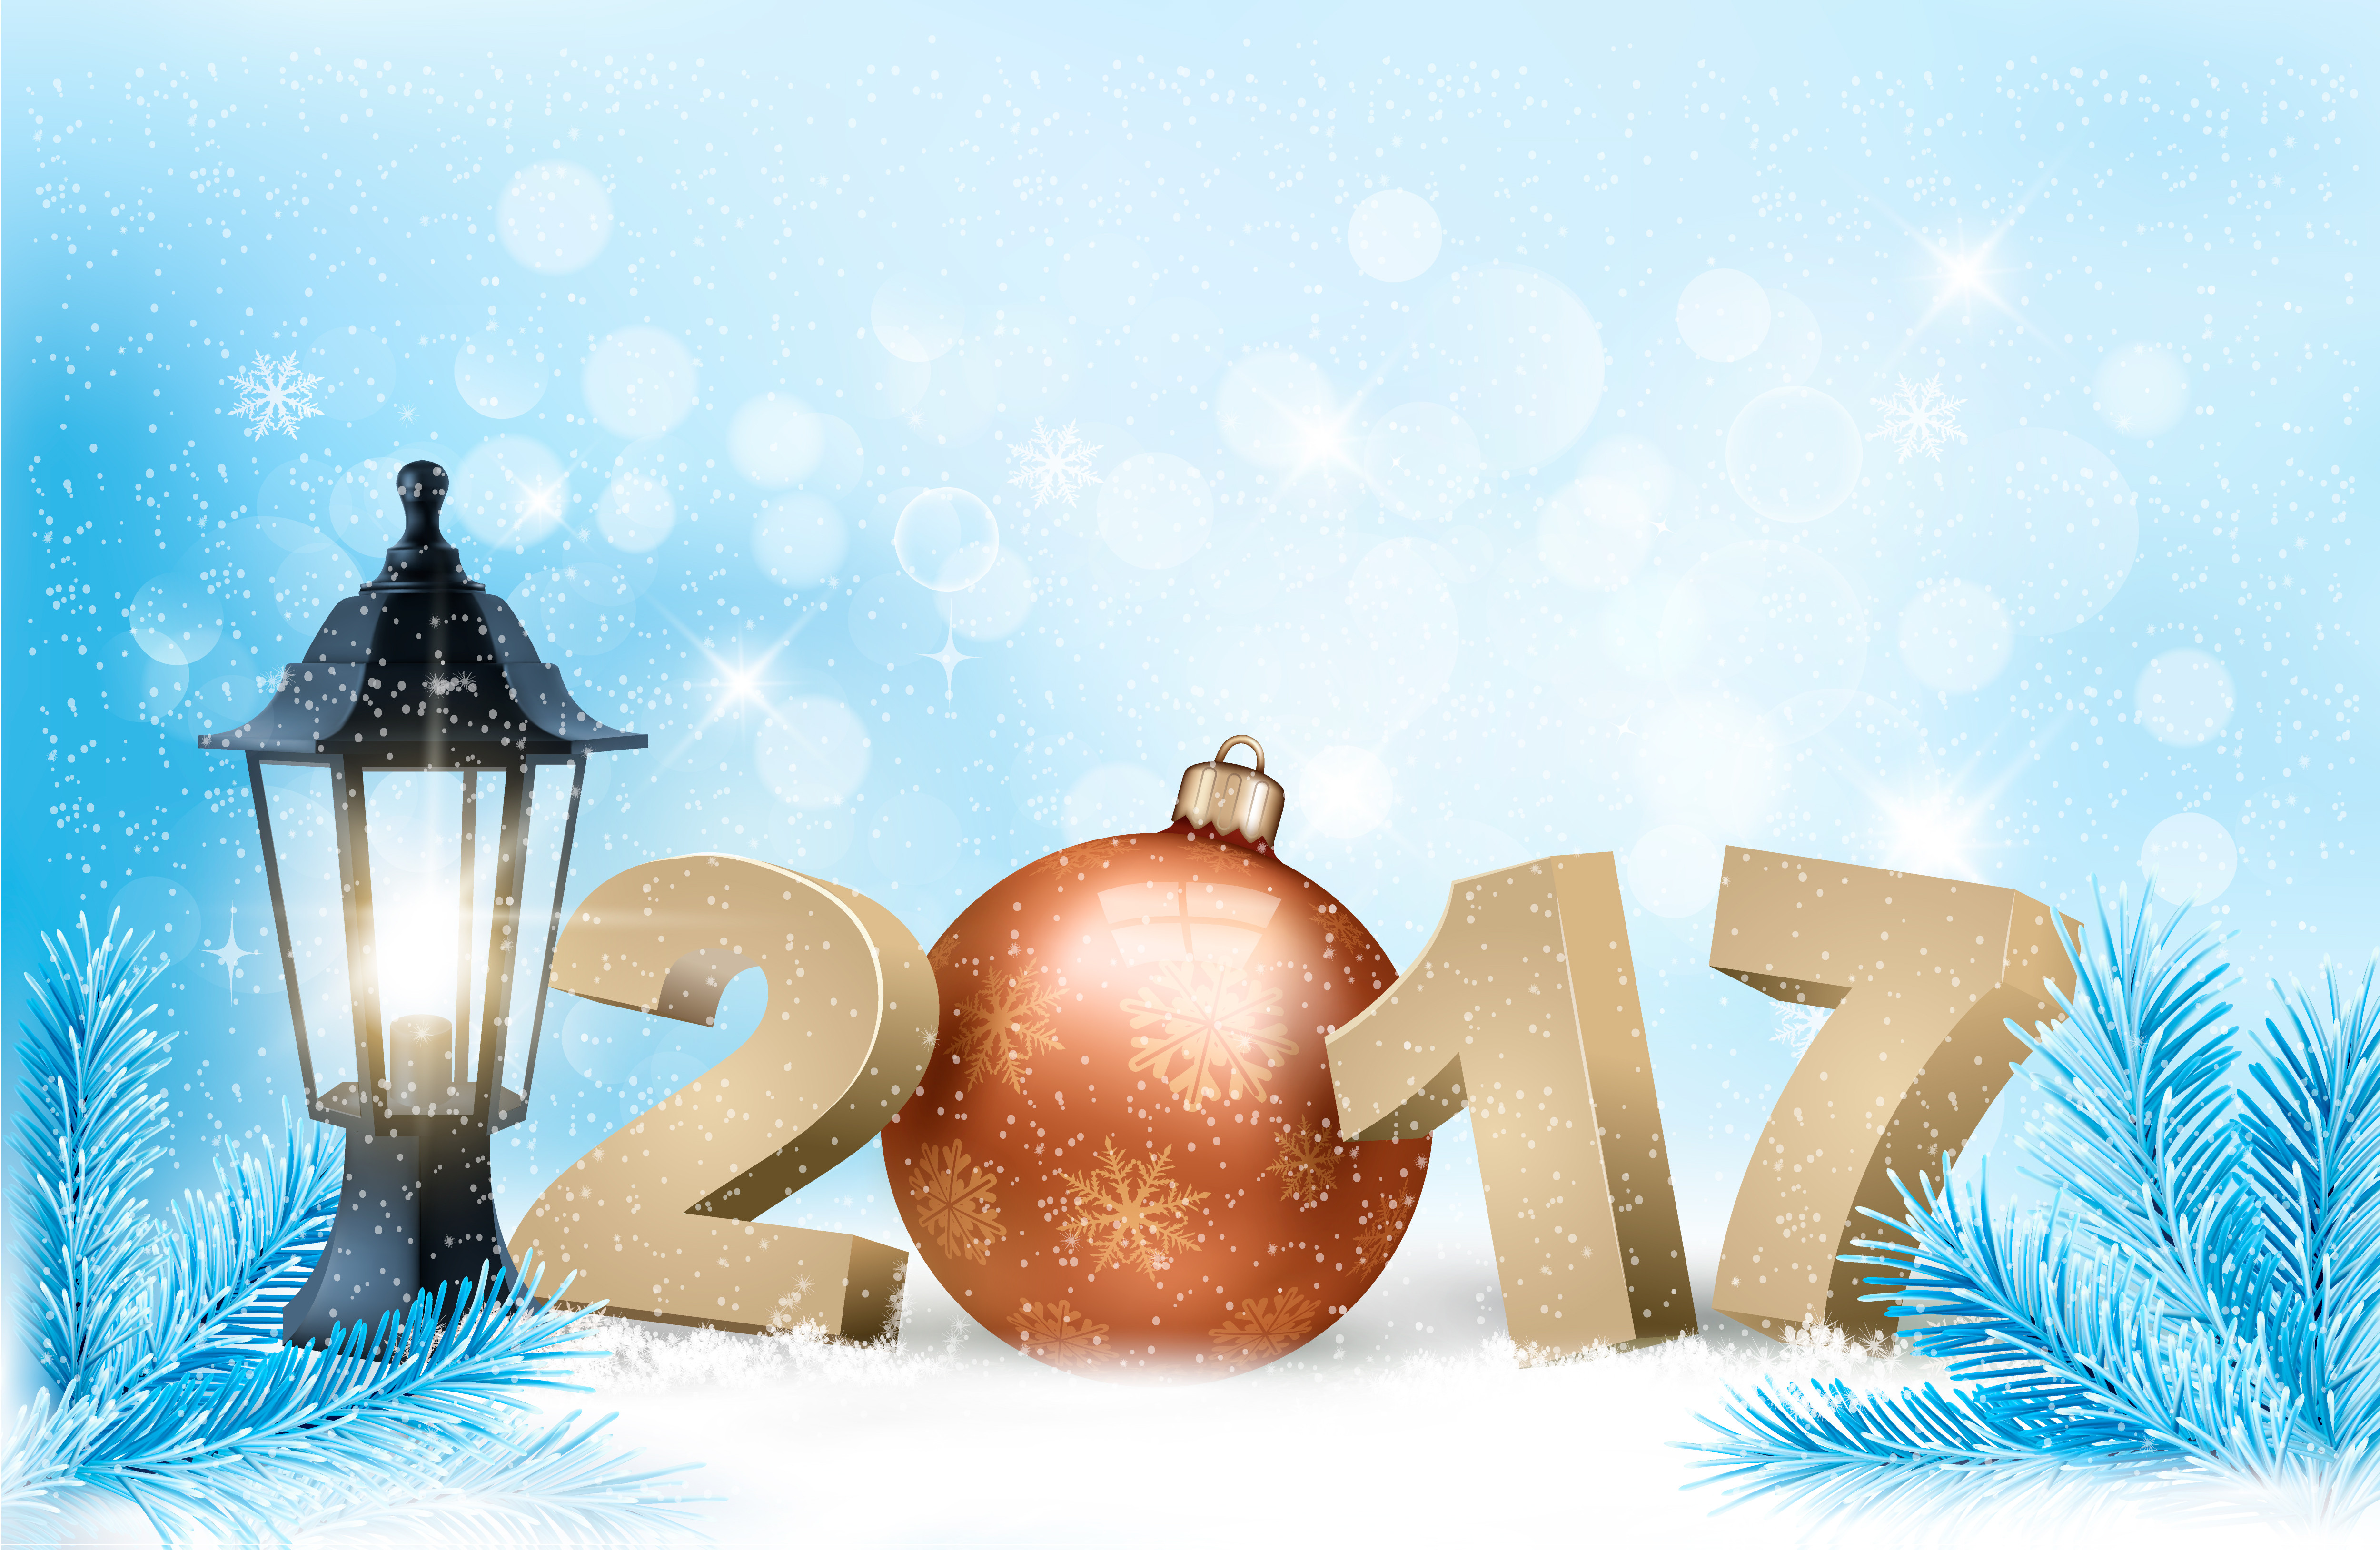 31 декабря 2016 г. Обои на рабочий стол новый год. С новым годом. Новогодняя открытка. Обои на рабочий стол зима новый год.